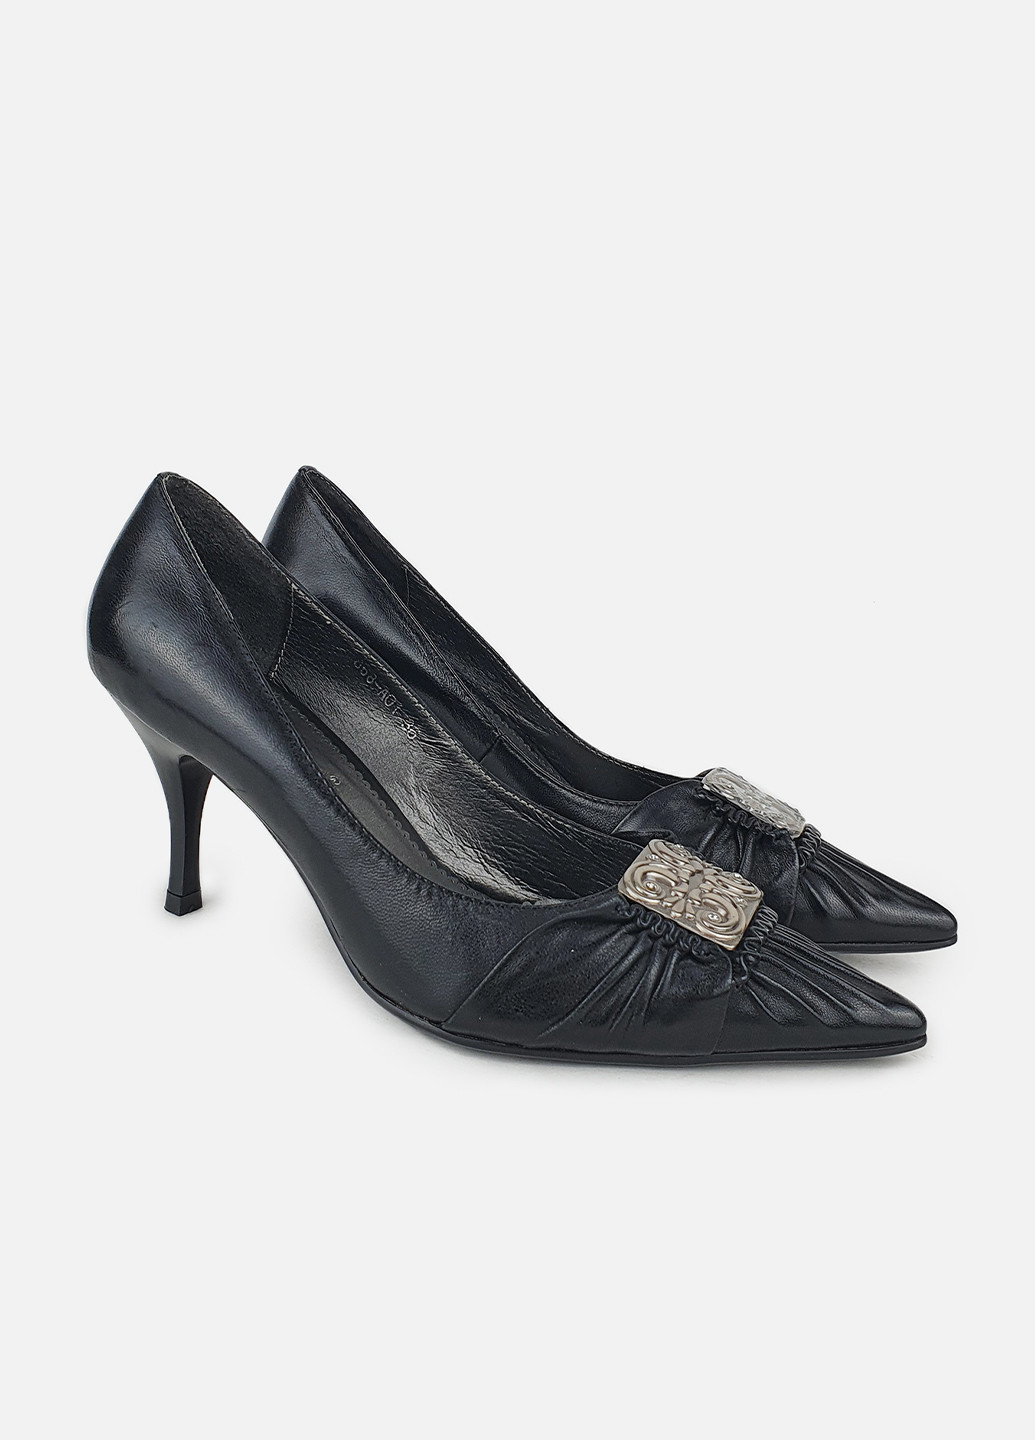 Женские туфли с острым носком черные кожаные на среднем каблуке Brocoli